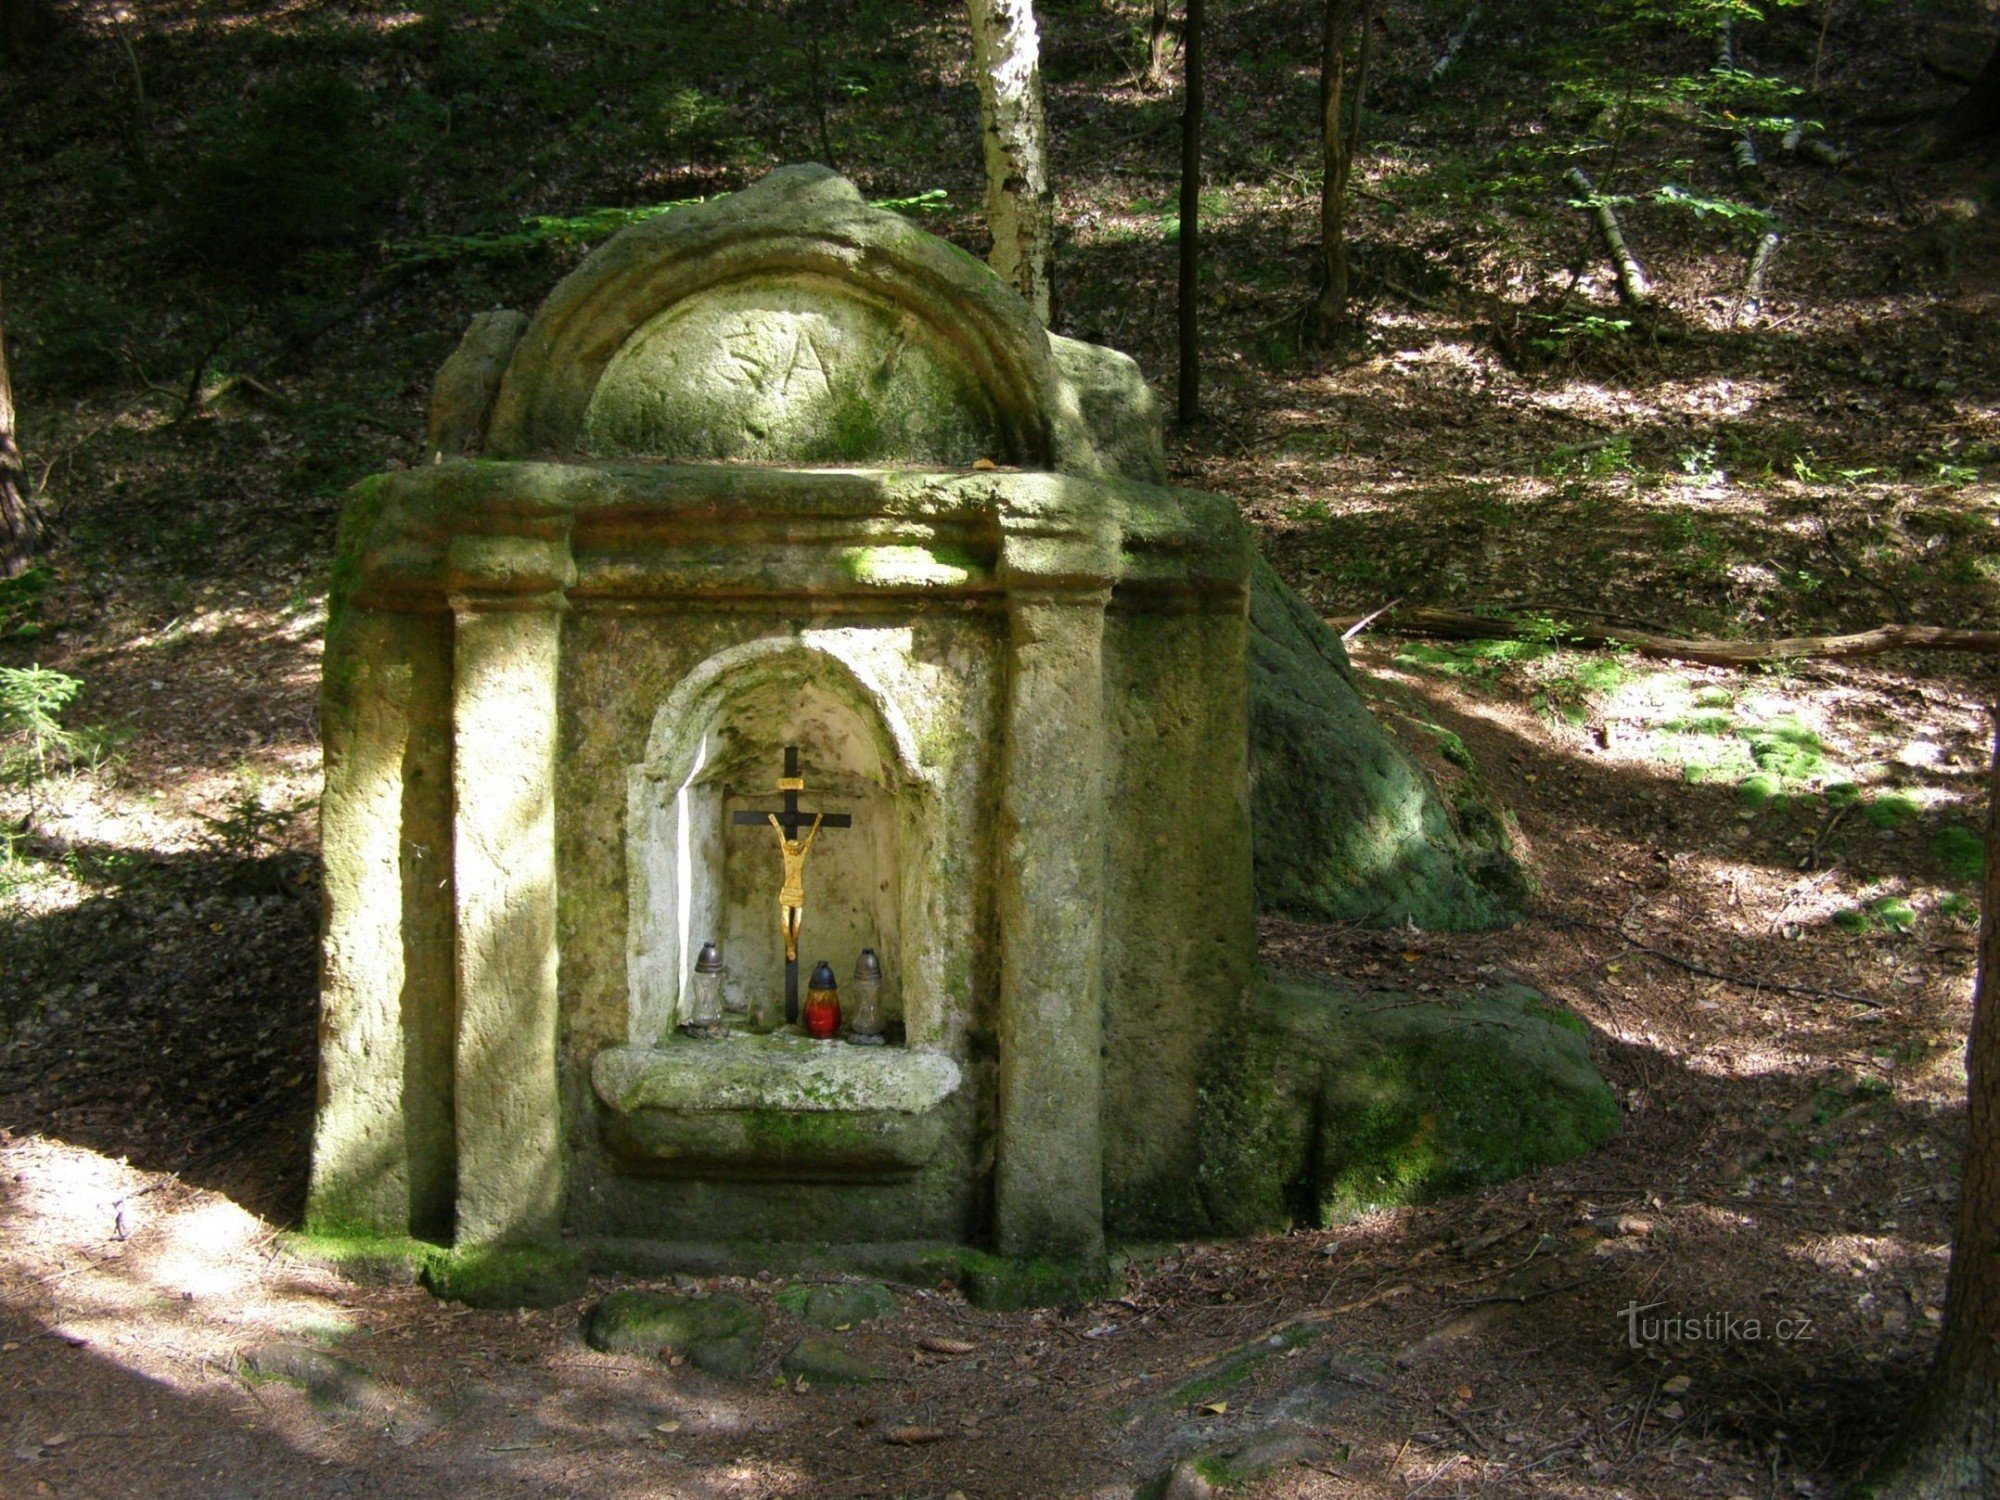 nhà nguyện bằng đá trong hẻm núi Boudecka